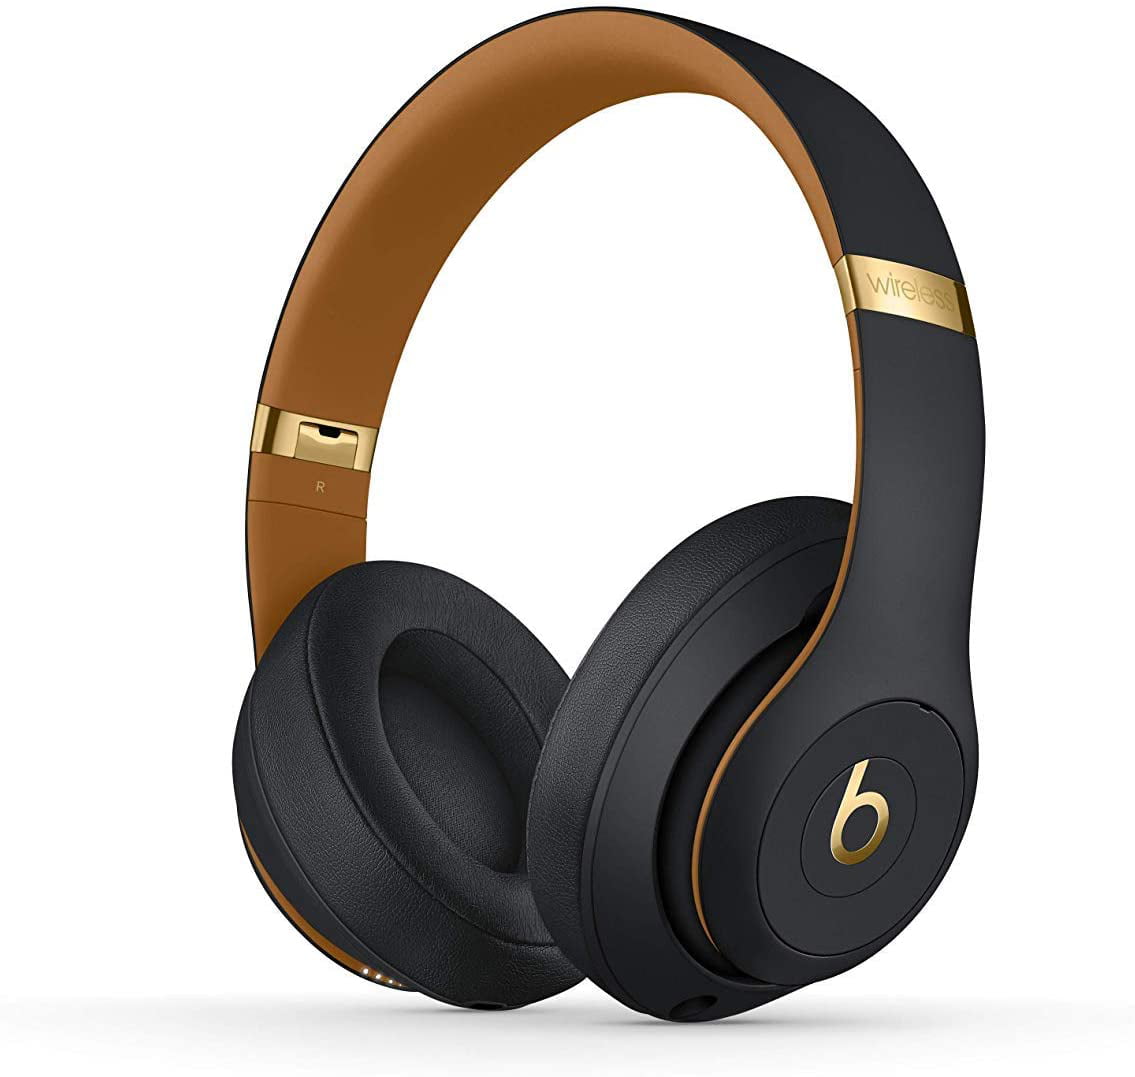 Restored Beats Studio3 Wireless Over-Ear Headphones – The Beats Skyline